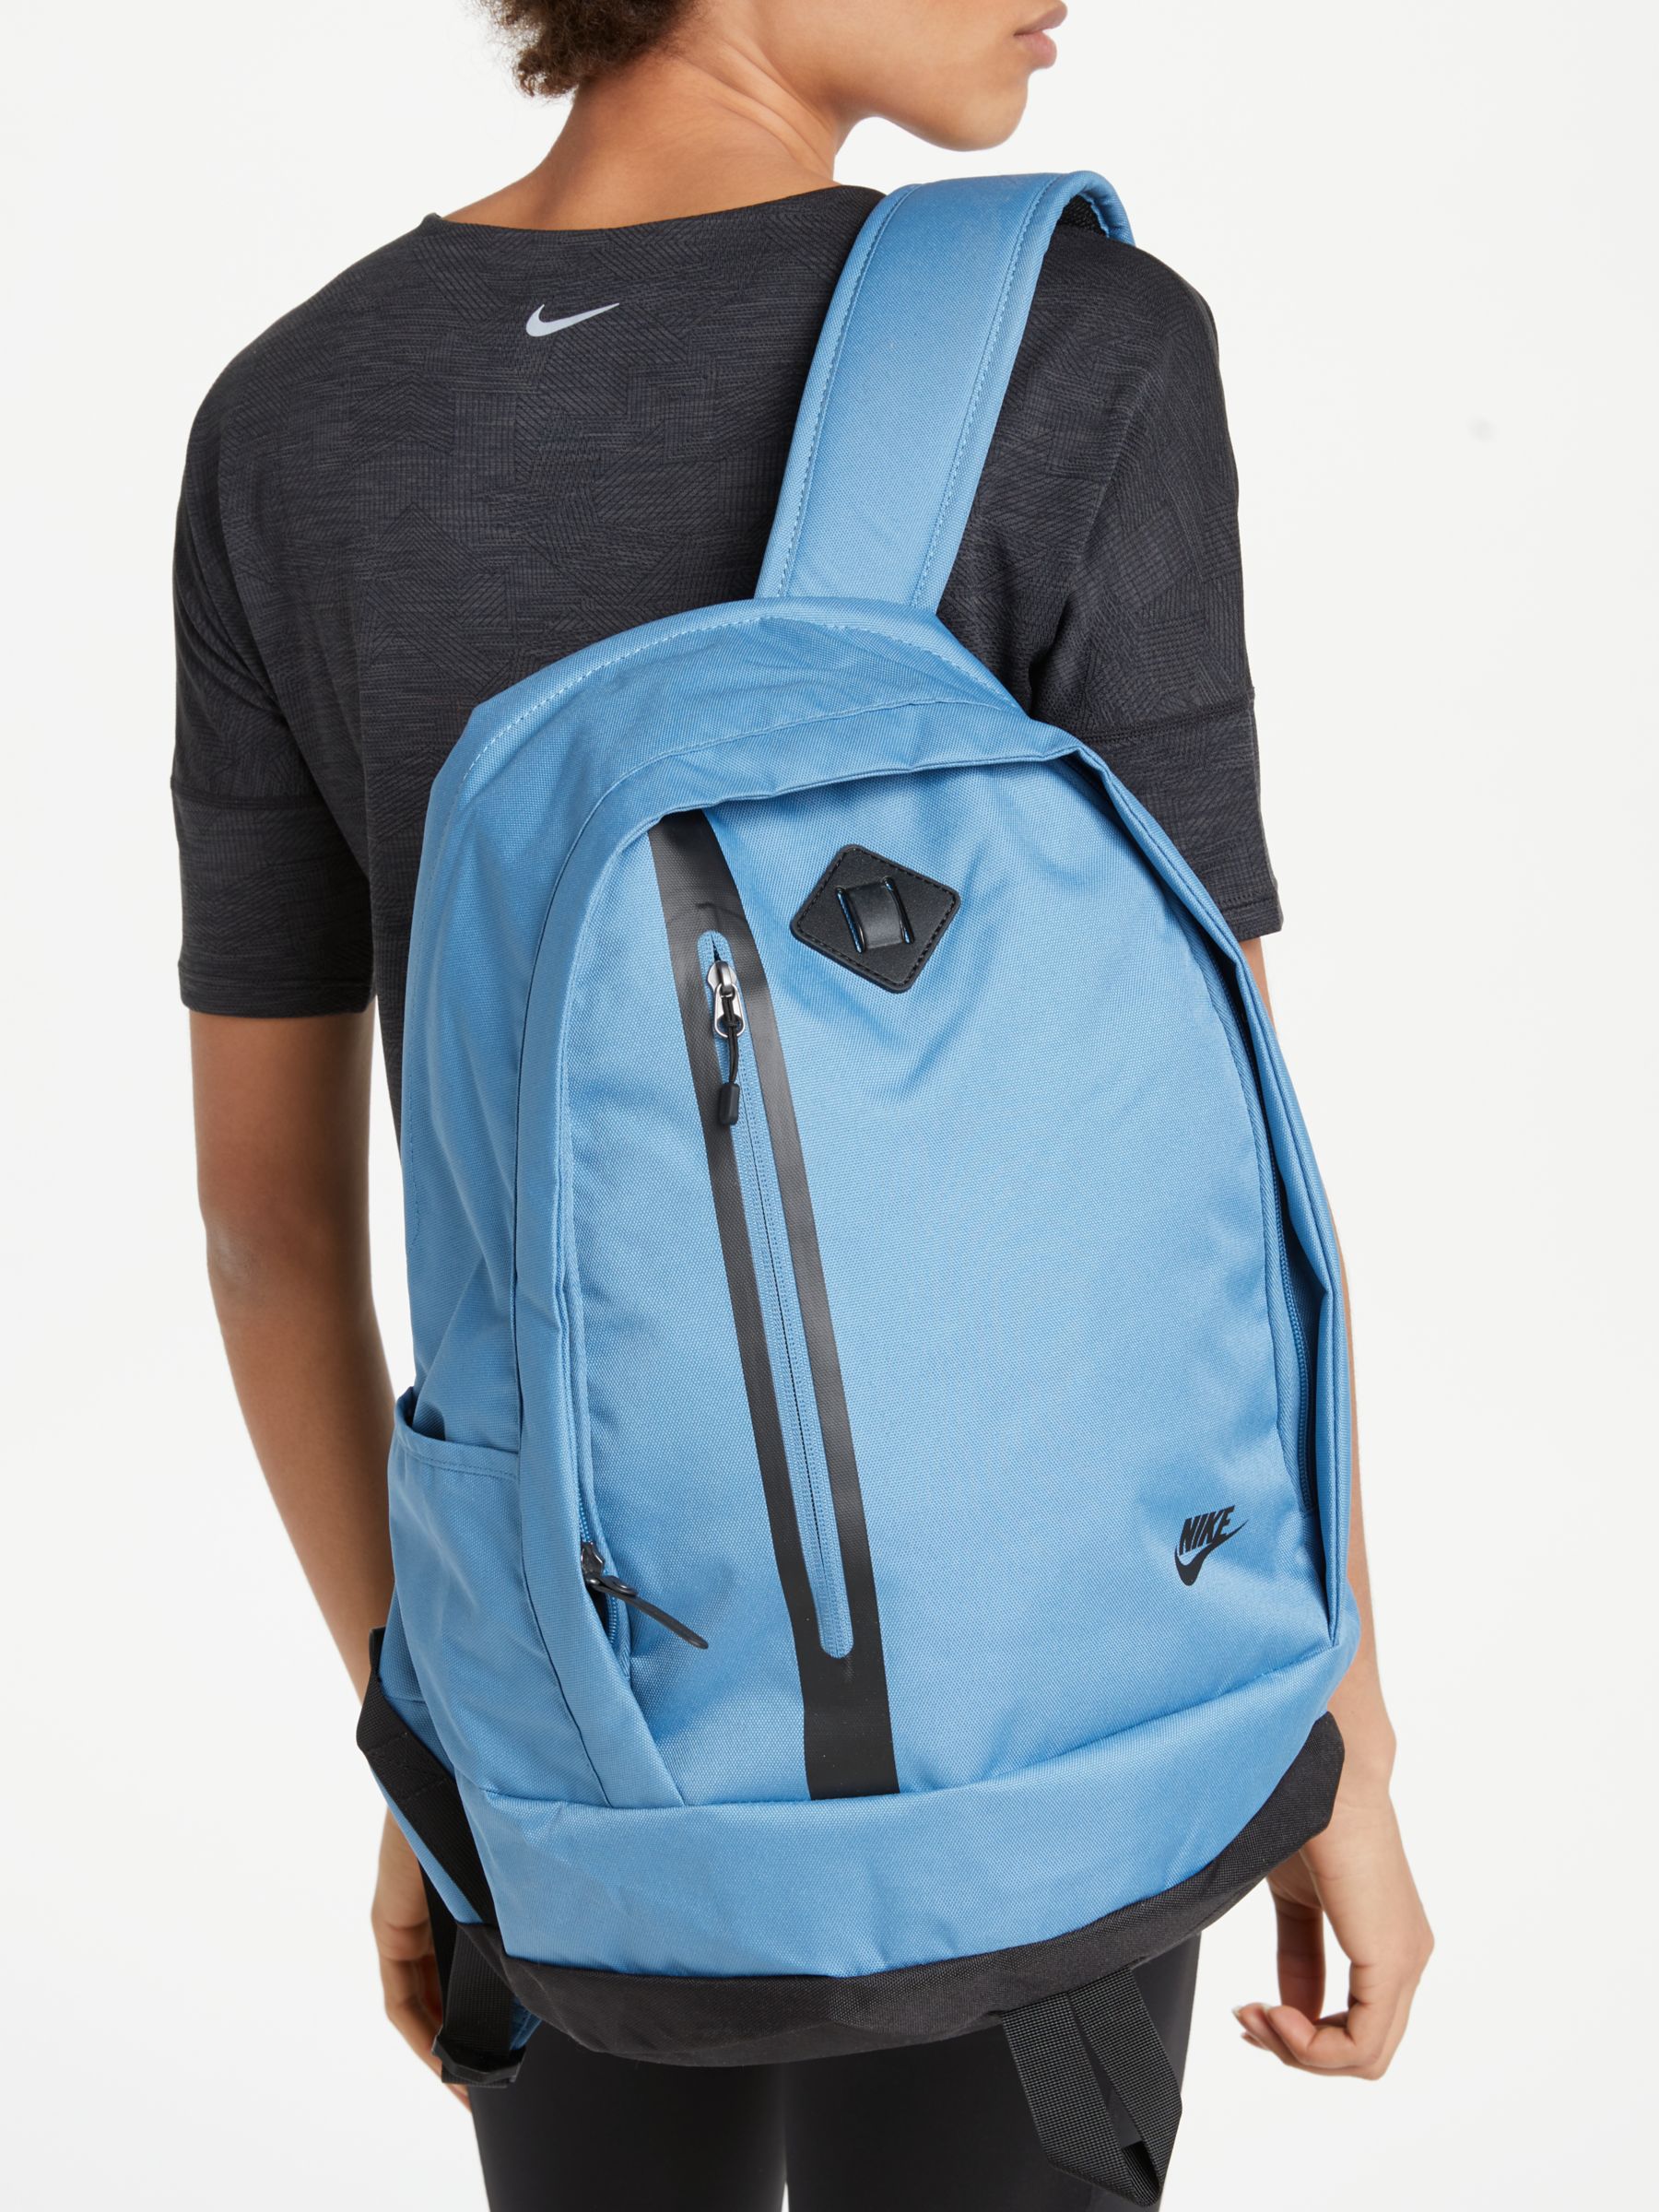 nike cheyenne backpack blue